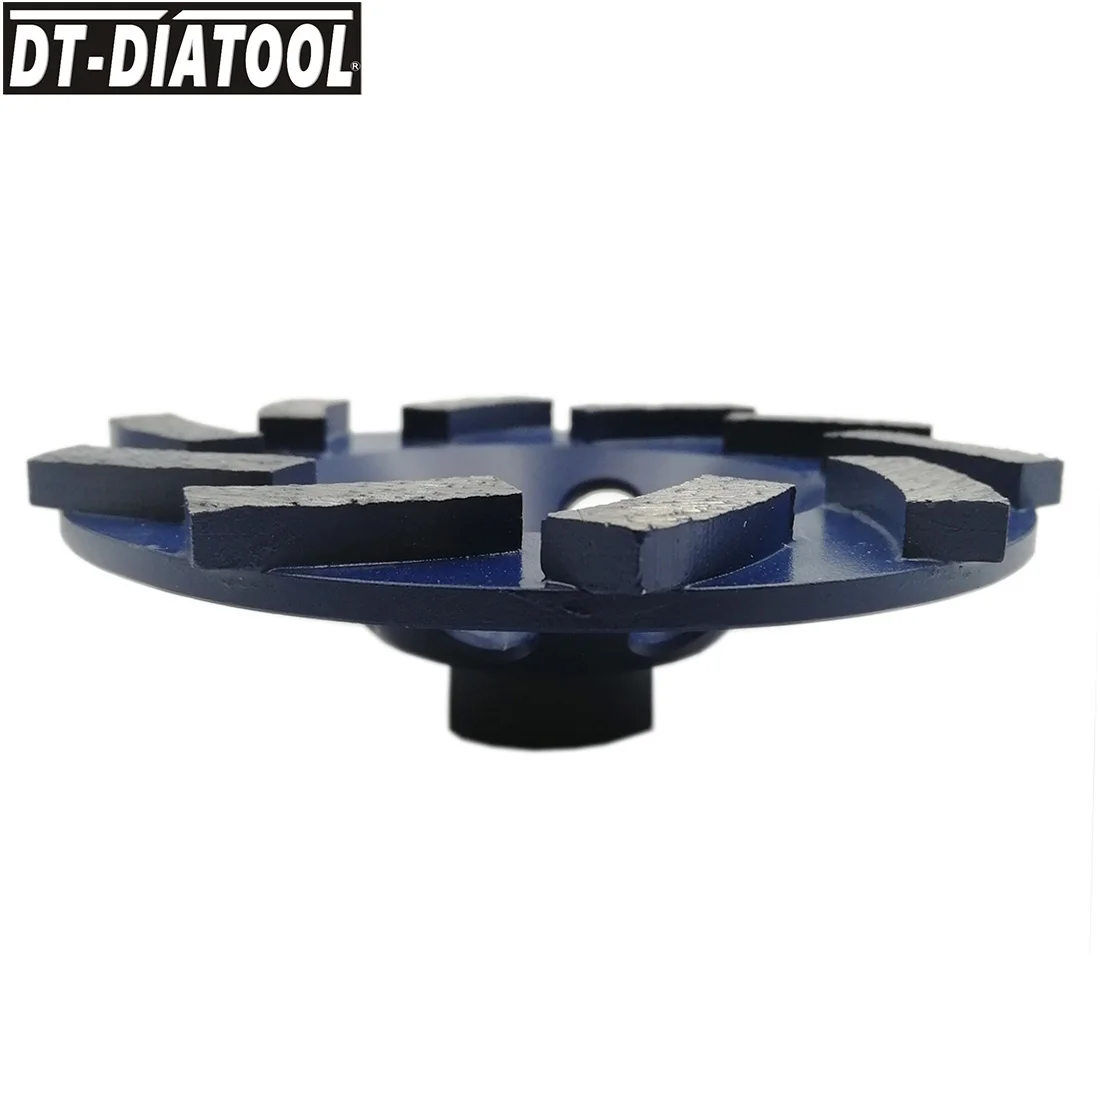 DT-DIATOOL 1 шт. 100 мм/4 дюйма Алмазный спиральный турбо ряд чашевидный шлифовальный круг для бетона Кирпич твердый камень с 5/8-11 соединением